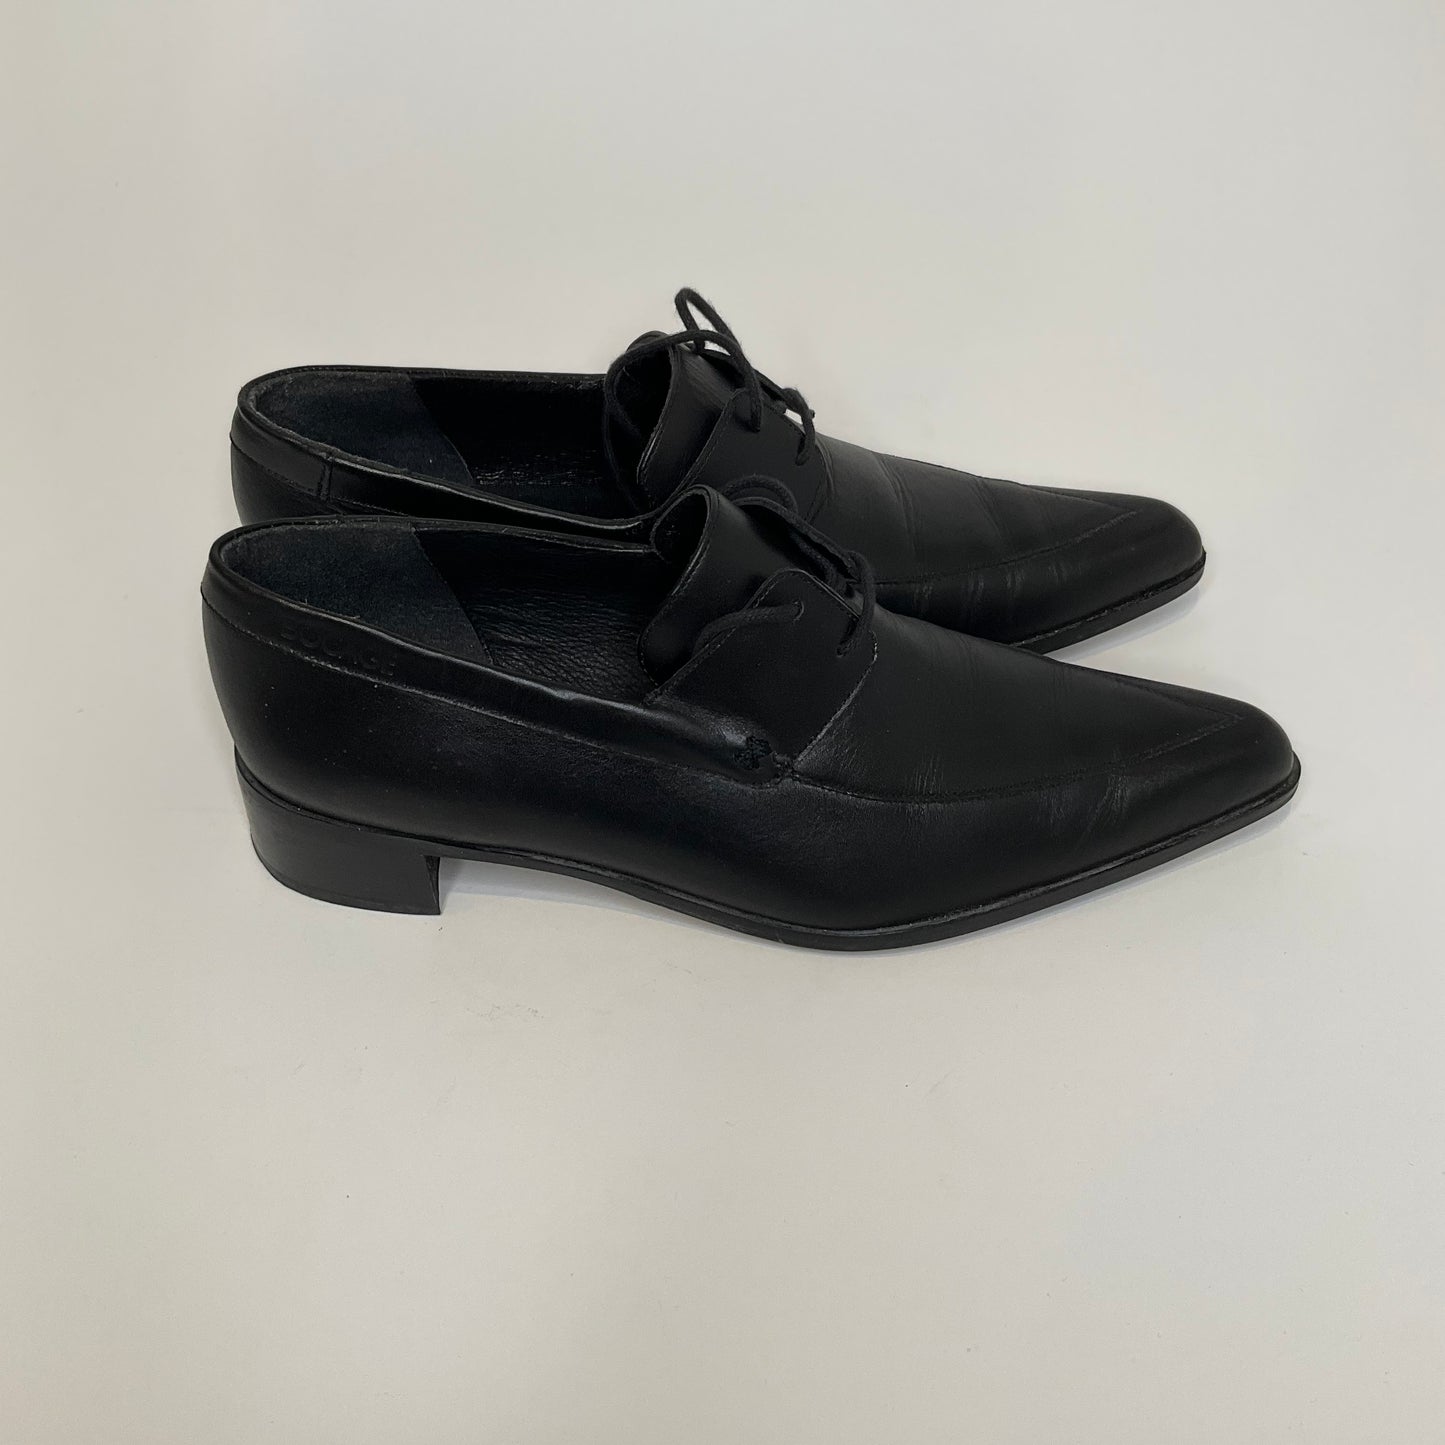 Bocage Paris - Shoes - Size 8.5